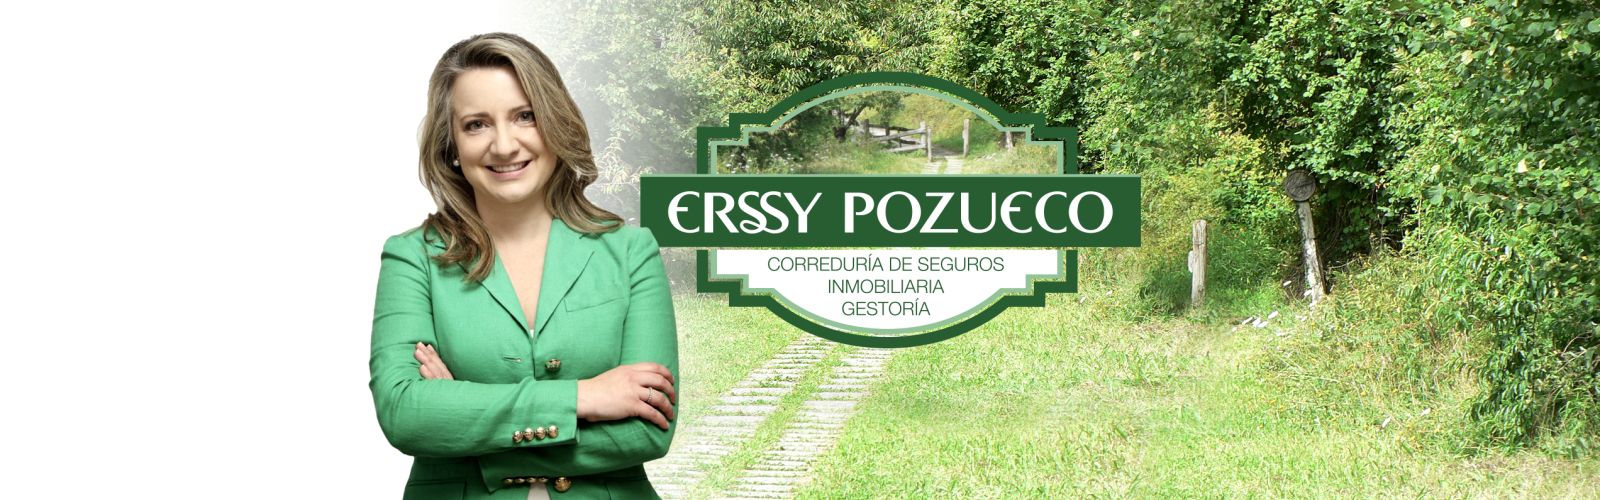 Erssy Pozueco Inmobiliaria